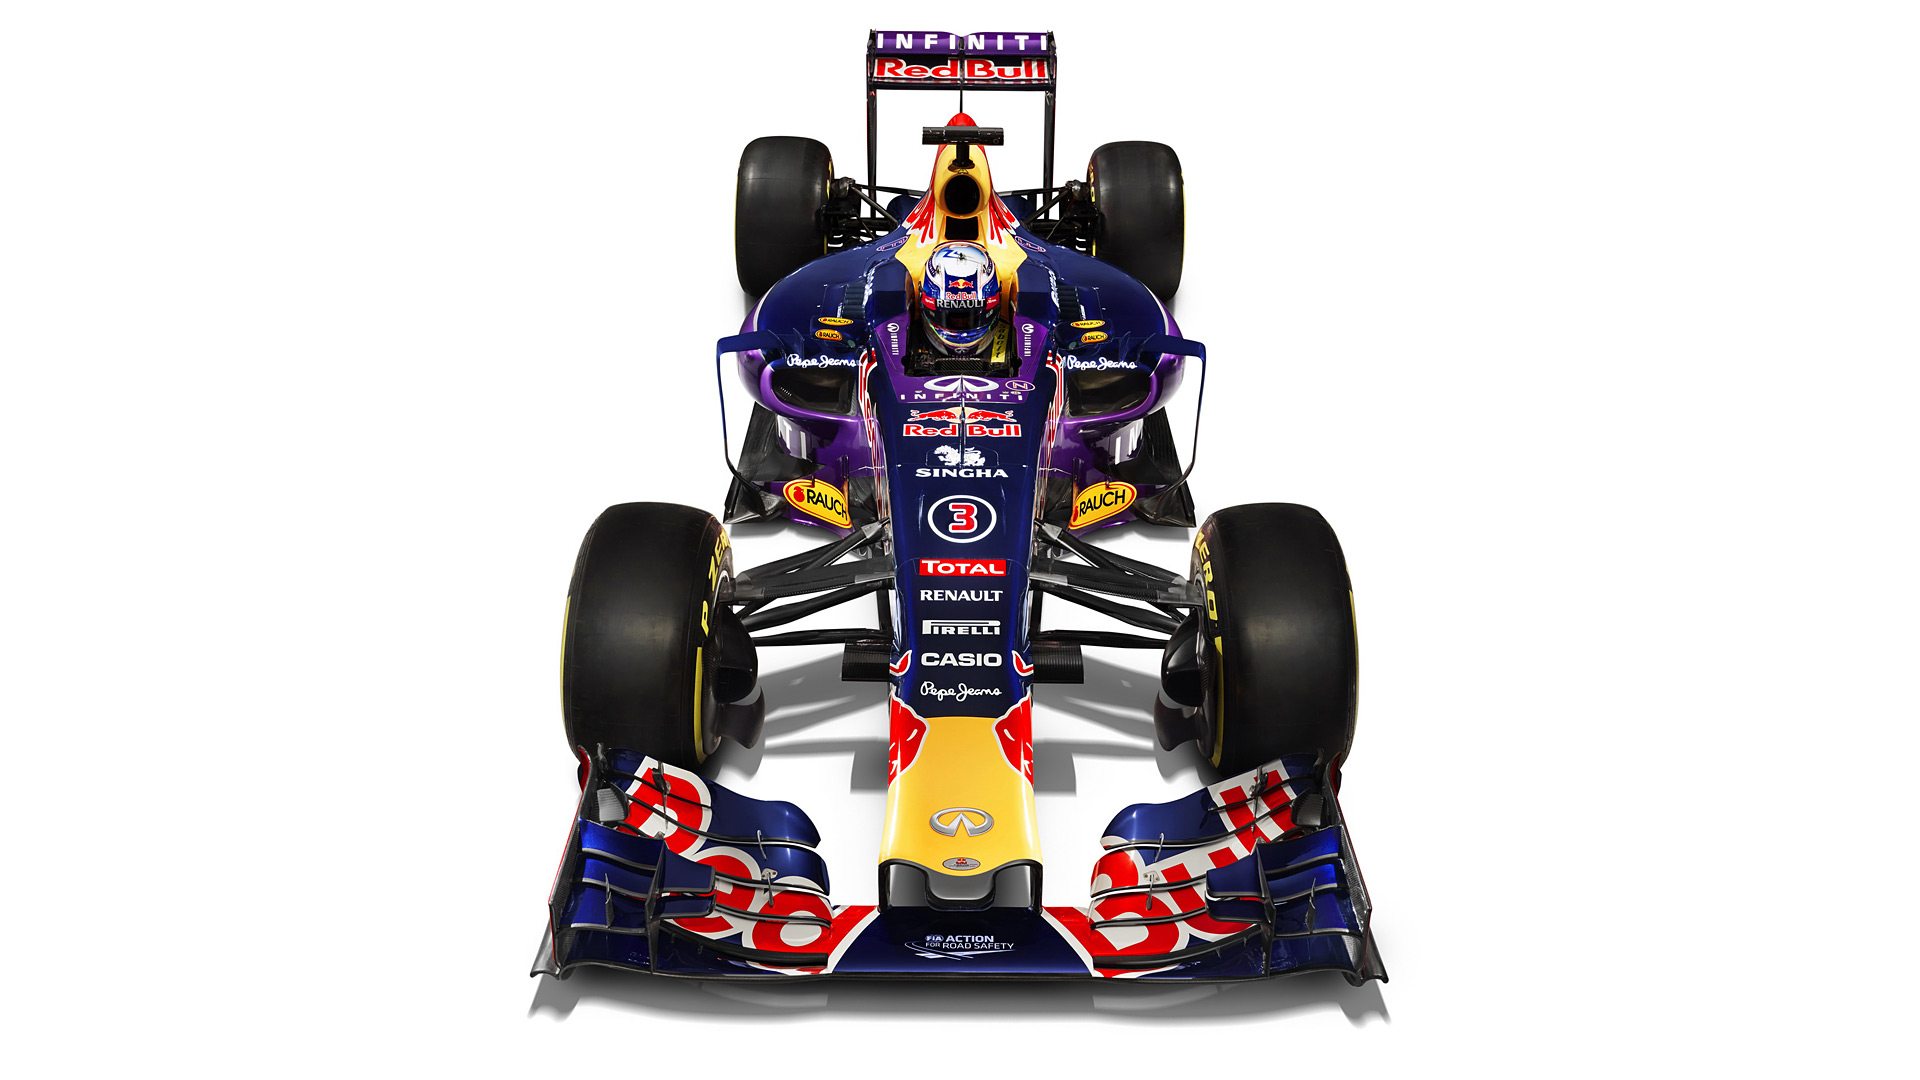  2015 Red Bull Racing RB11 Wallpaper.